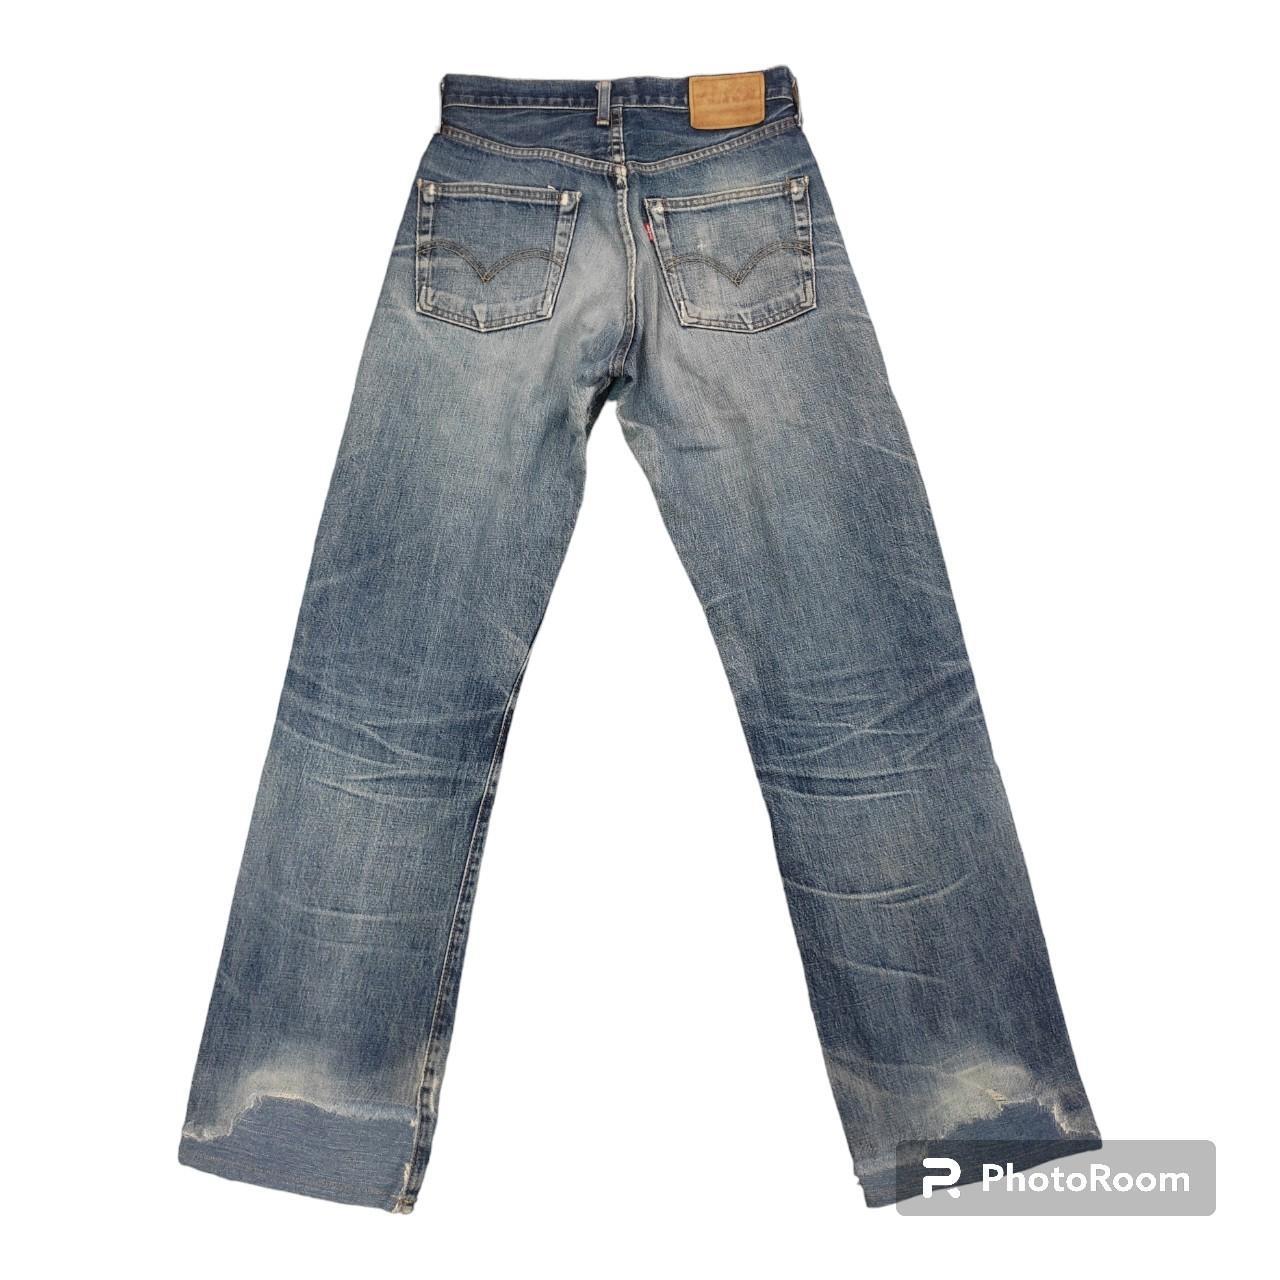 Levis 504Z-XX Jeans Distressed Vintage Size 28 Levis... - Depop